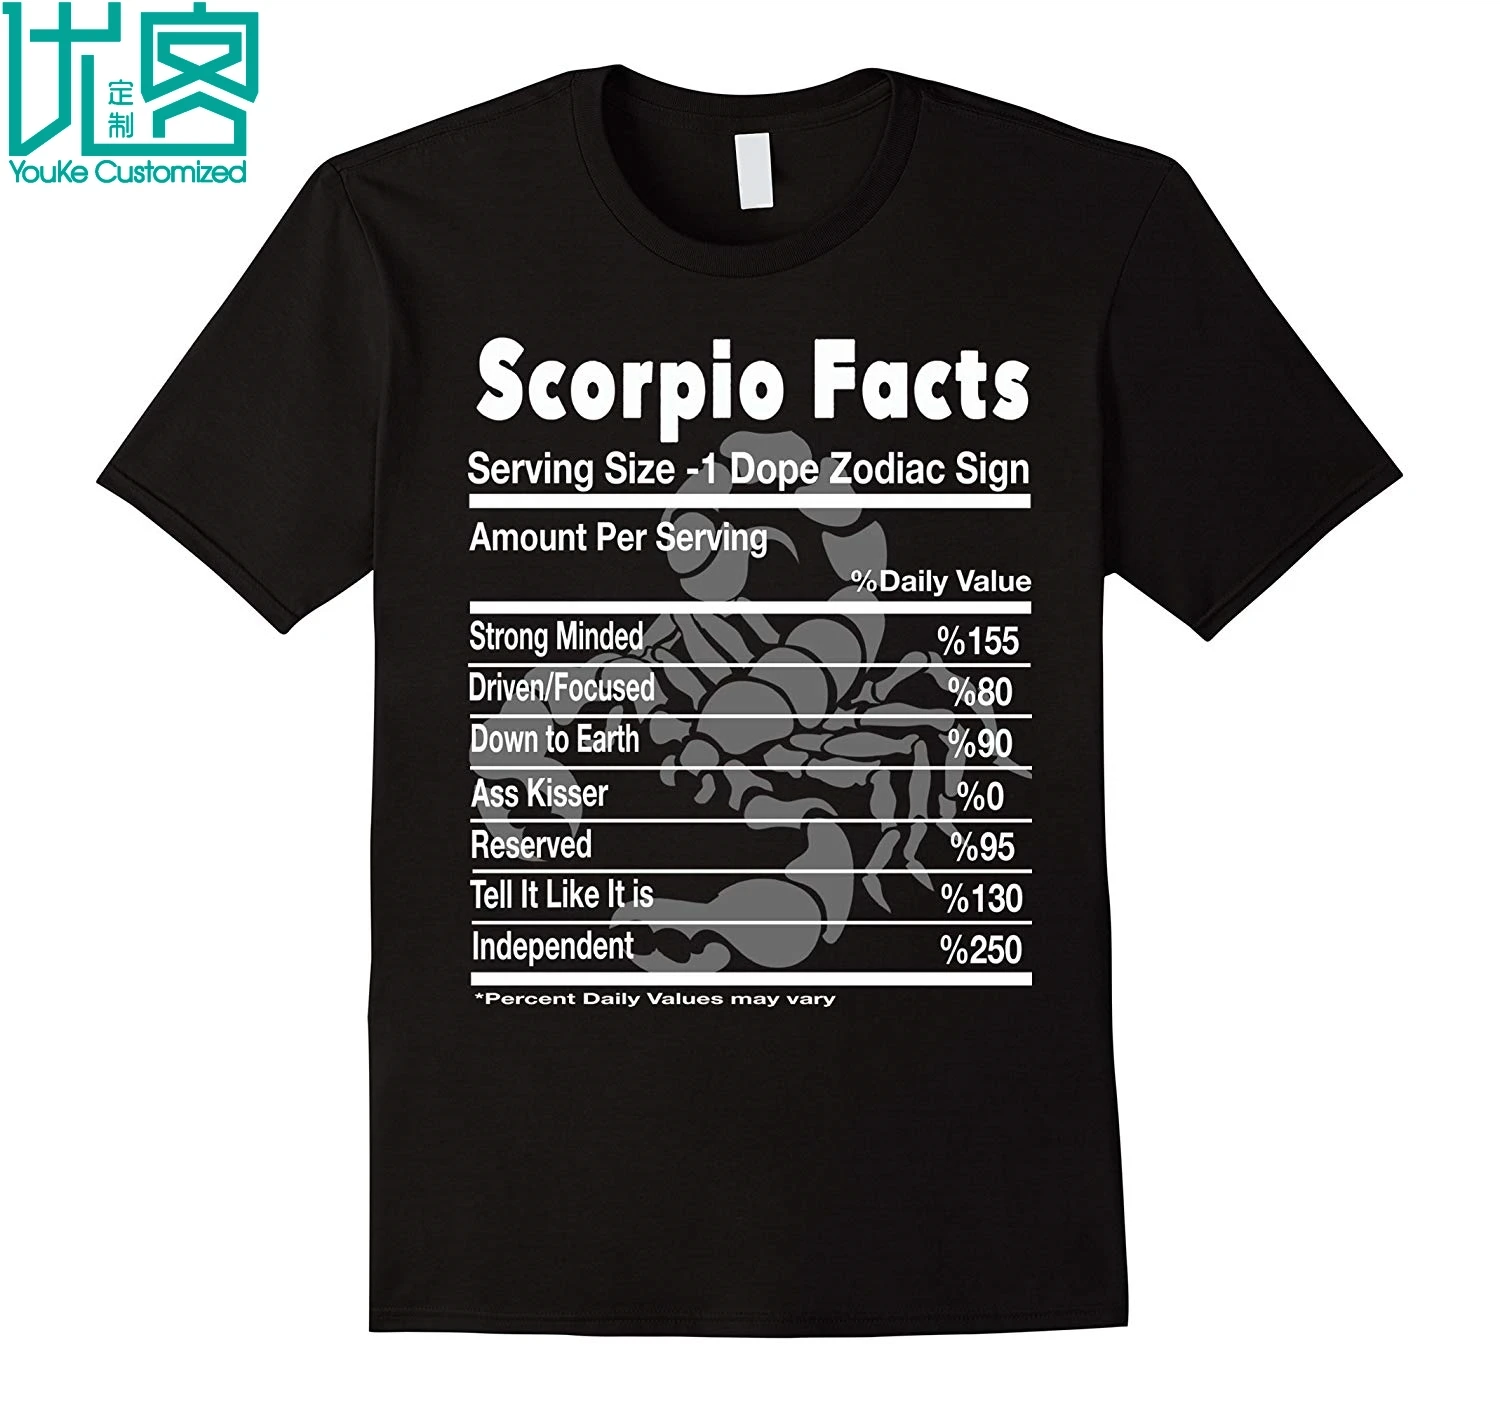 Мужская футболка с коротким рукавом Scorpio Facts забавный подарок на день | Отзывы и видеообзор